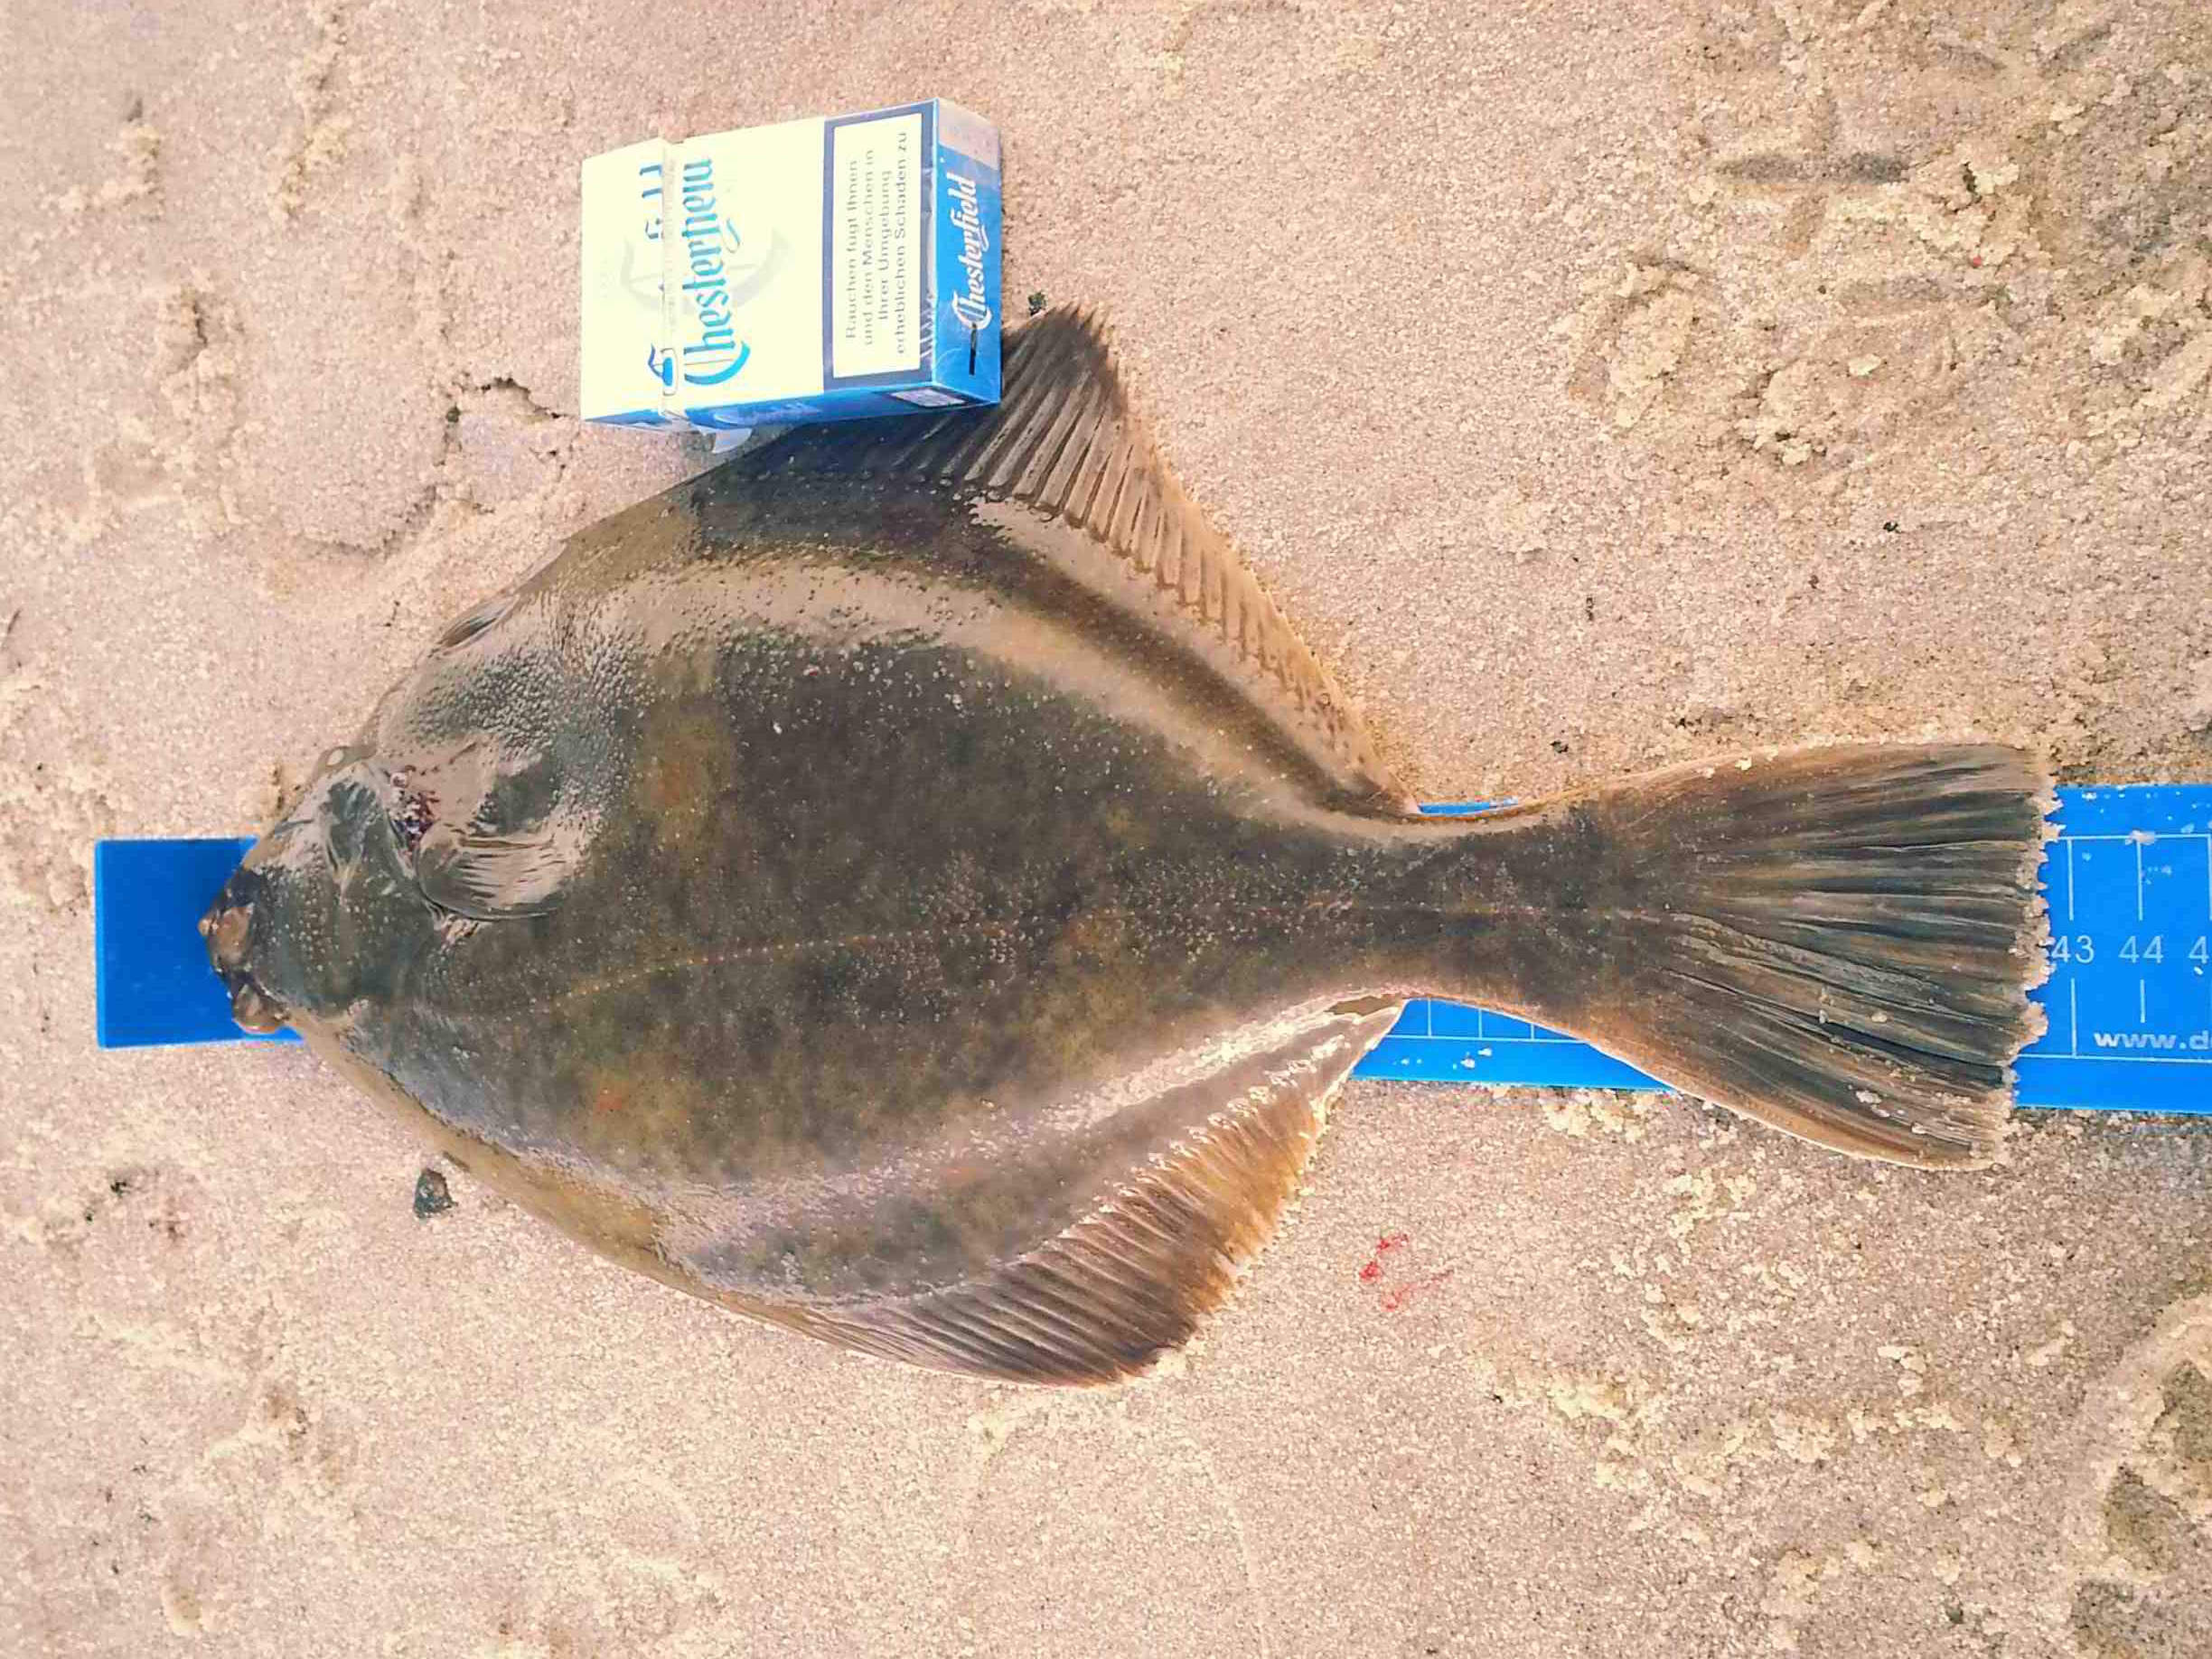 © Kajos Plattfisch auf der Messlatte zeigt 43cm an